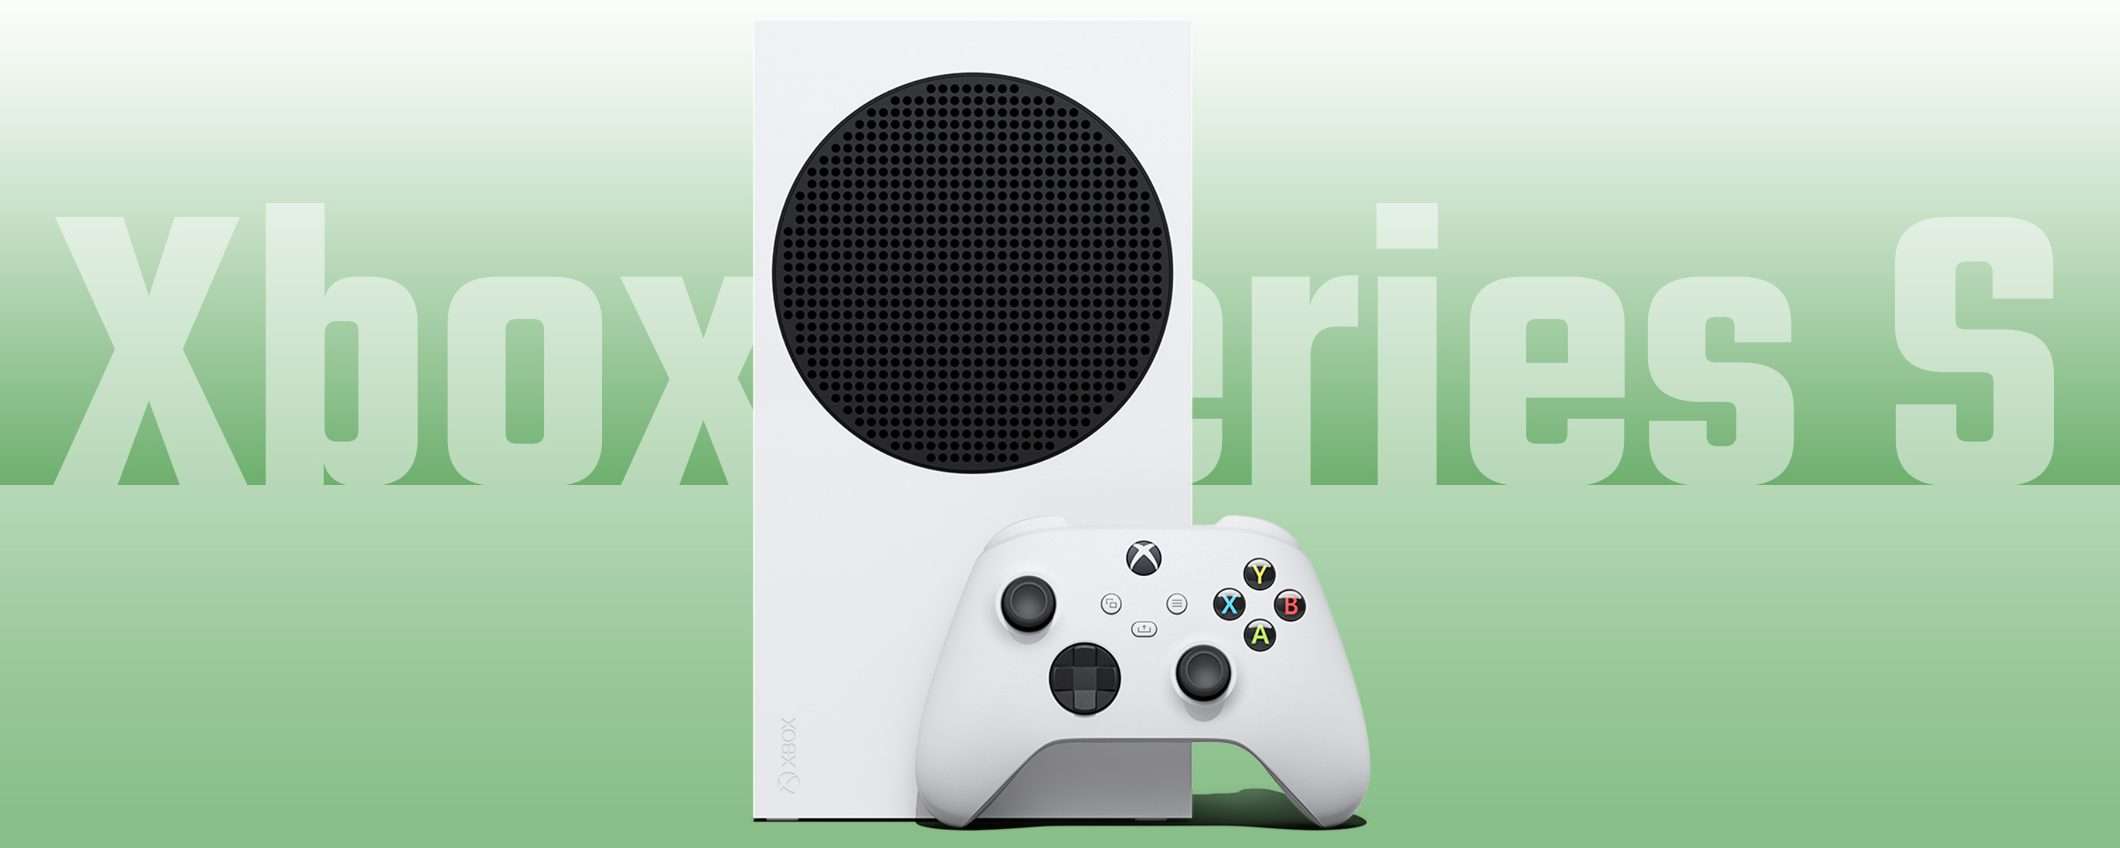 Console next-gen e coupon: Xbox Series S in sconto